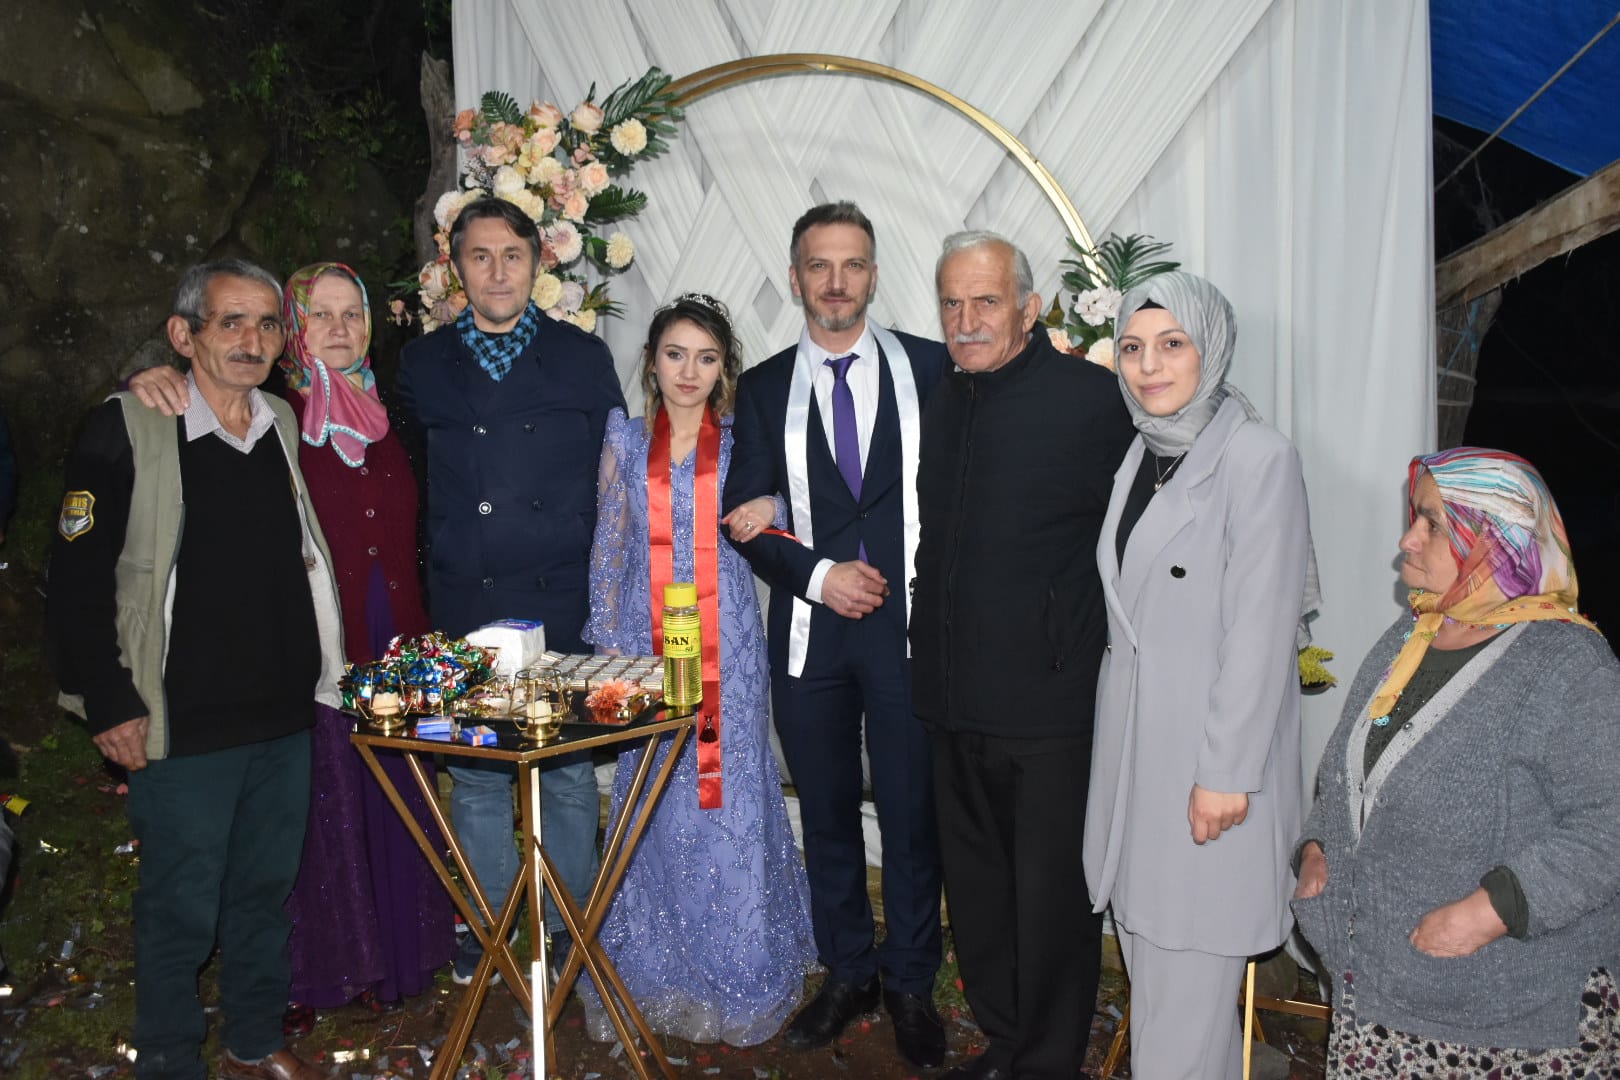 Belediye Başkanımız Hüseyin Kıyma, Satu Dilek ve İbrahim Acı çiftinin nişan merasimine katılarak evlilik yolundaki bu mutlu anlarına ortak oldu.